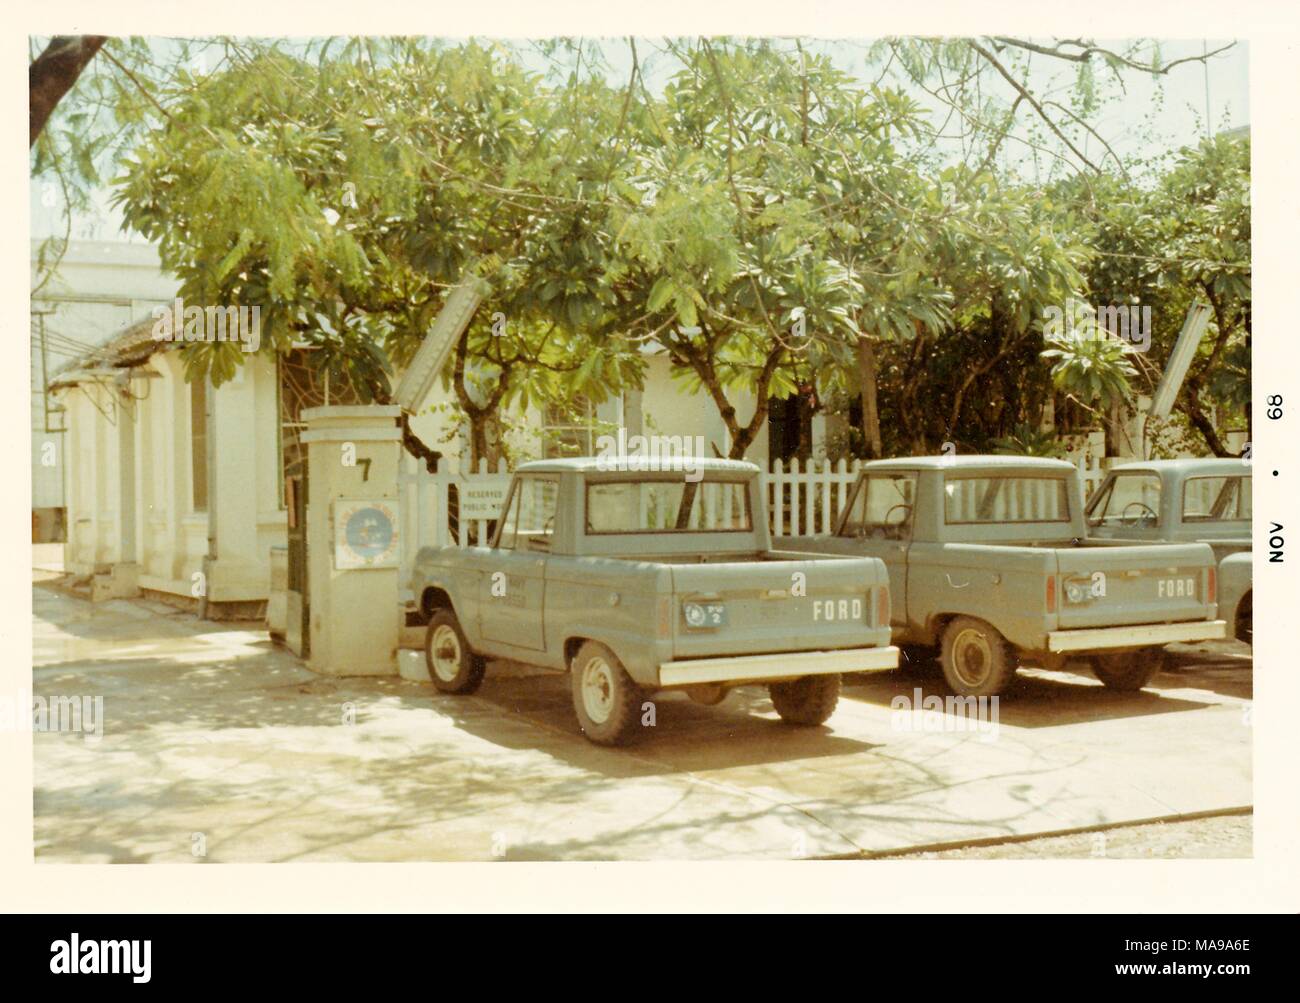 Fotografia a colori che mostra tre pickup Ford camion parcheggiato di fronte a Picket Fence, con alberi e una casa bianca sullo sfondo, fotografato in Vietnam durante la Guerra del Vietnam (1955-1975), 1968. () Foto Stock